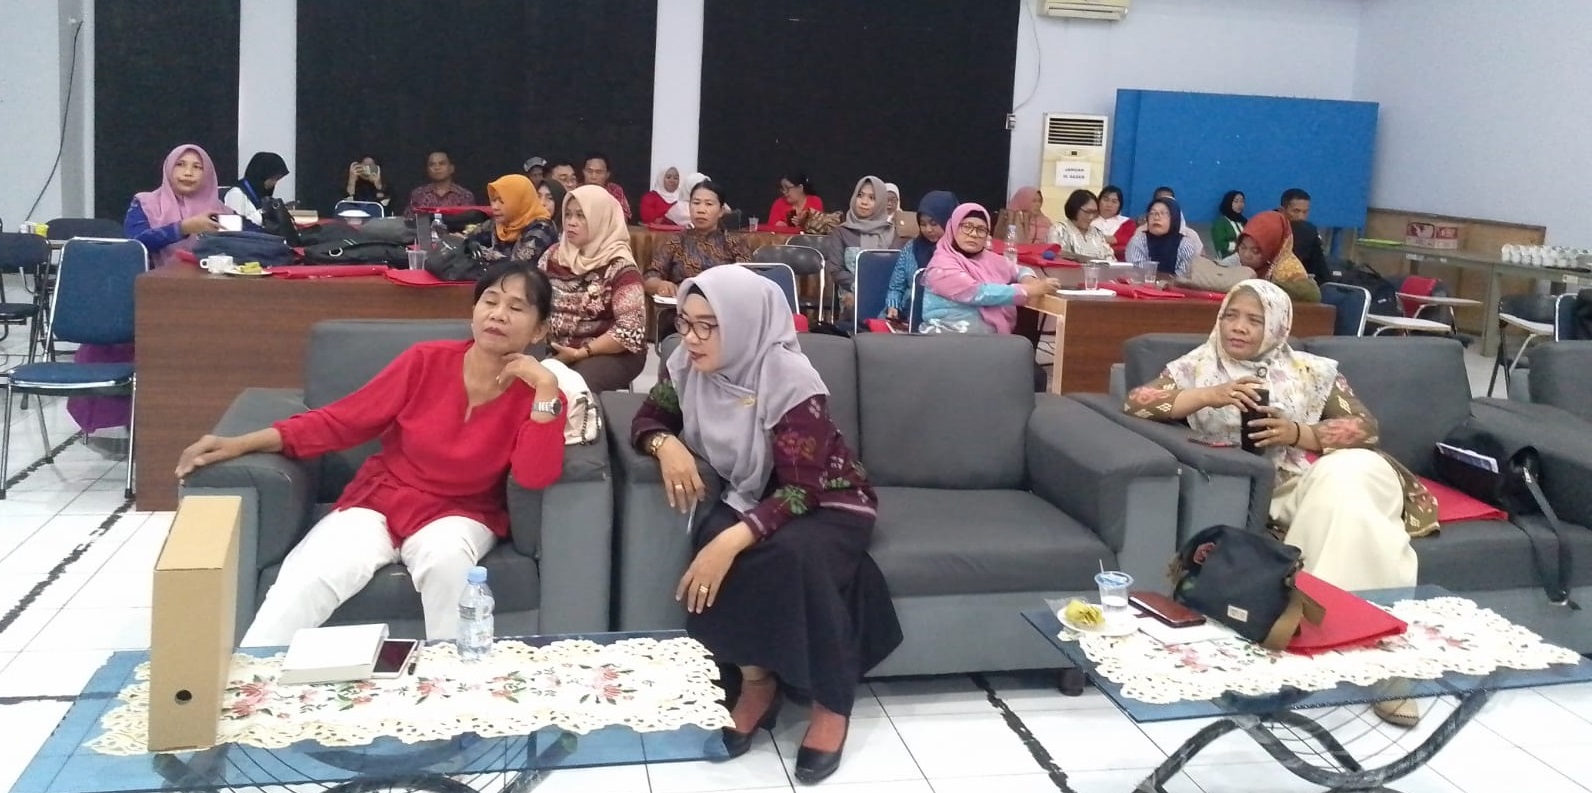 Berikan Bekal Penyelamatan Arsip, Direktorat Preservasi Gelar Bimtek di Sulawesi Tengah